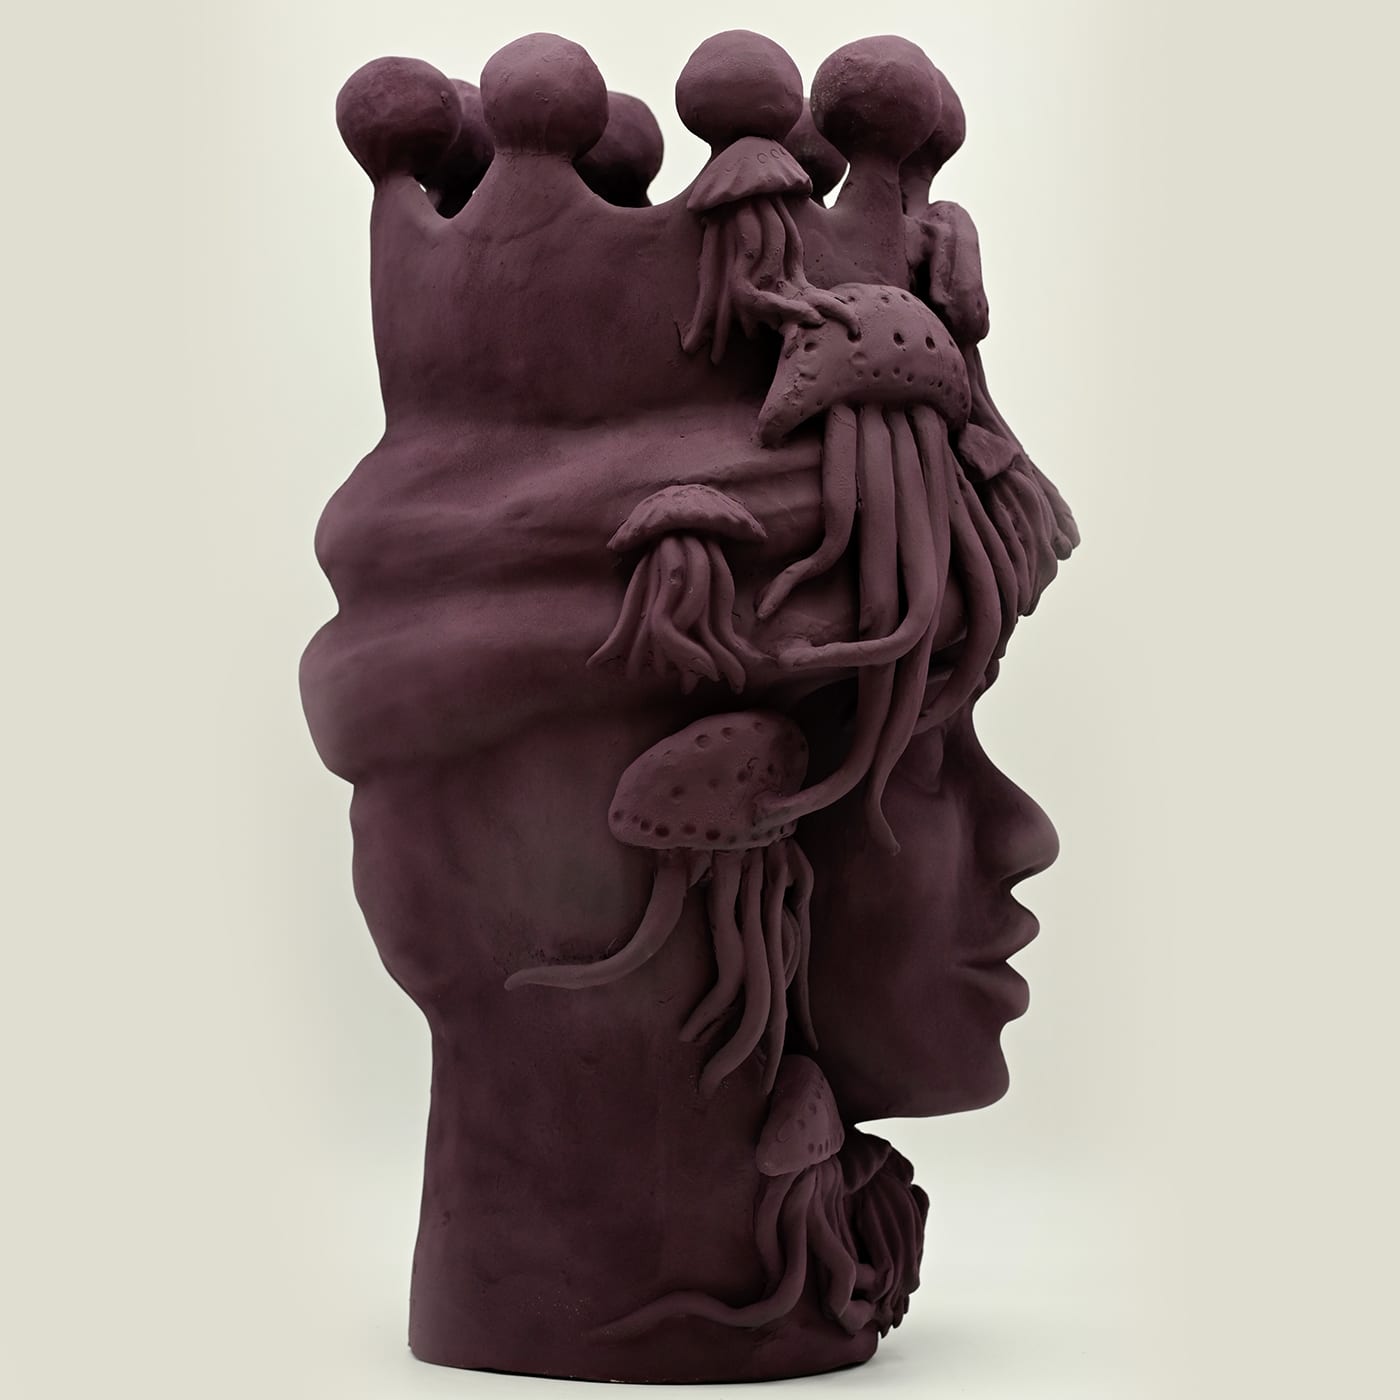 Original Handmade Moor's Head Sculpture